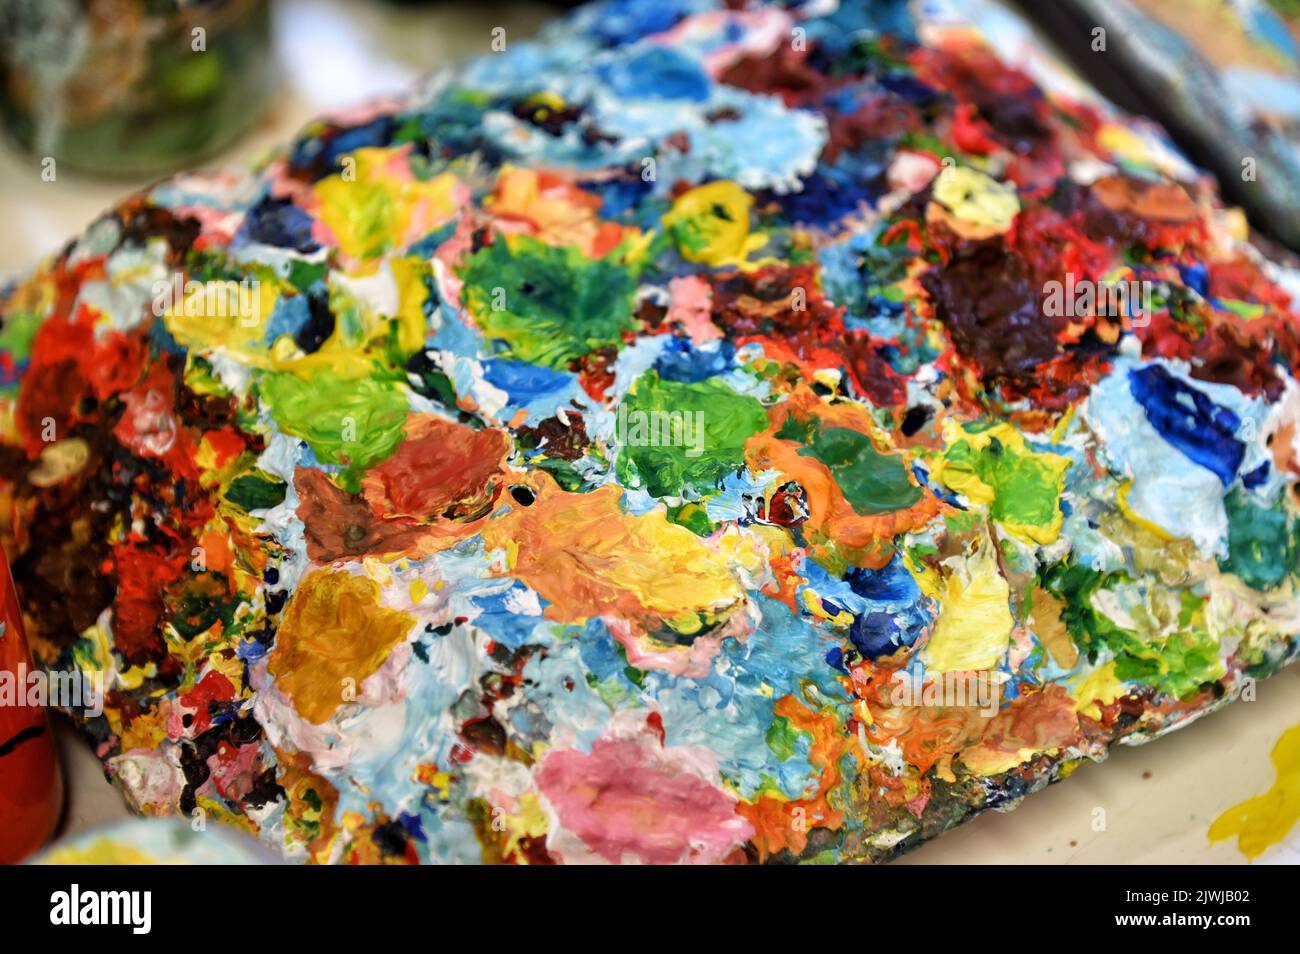 Dall'alto tavolozza ruvida con macchie di vernice multicolore asciutta poste sul tavolo in studio Foto Stock